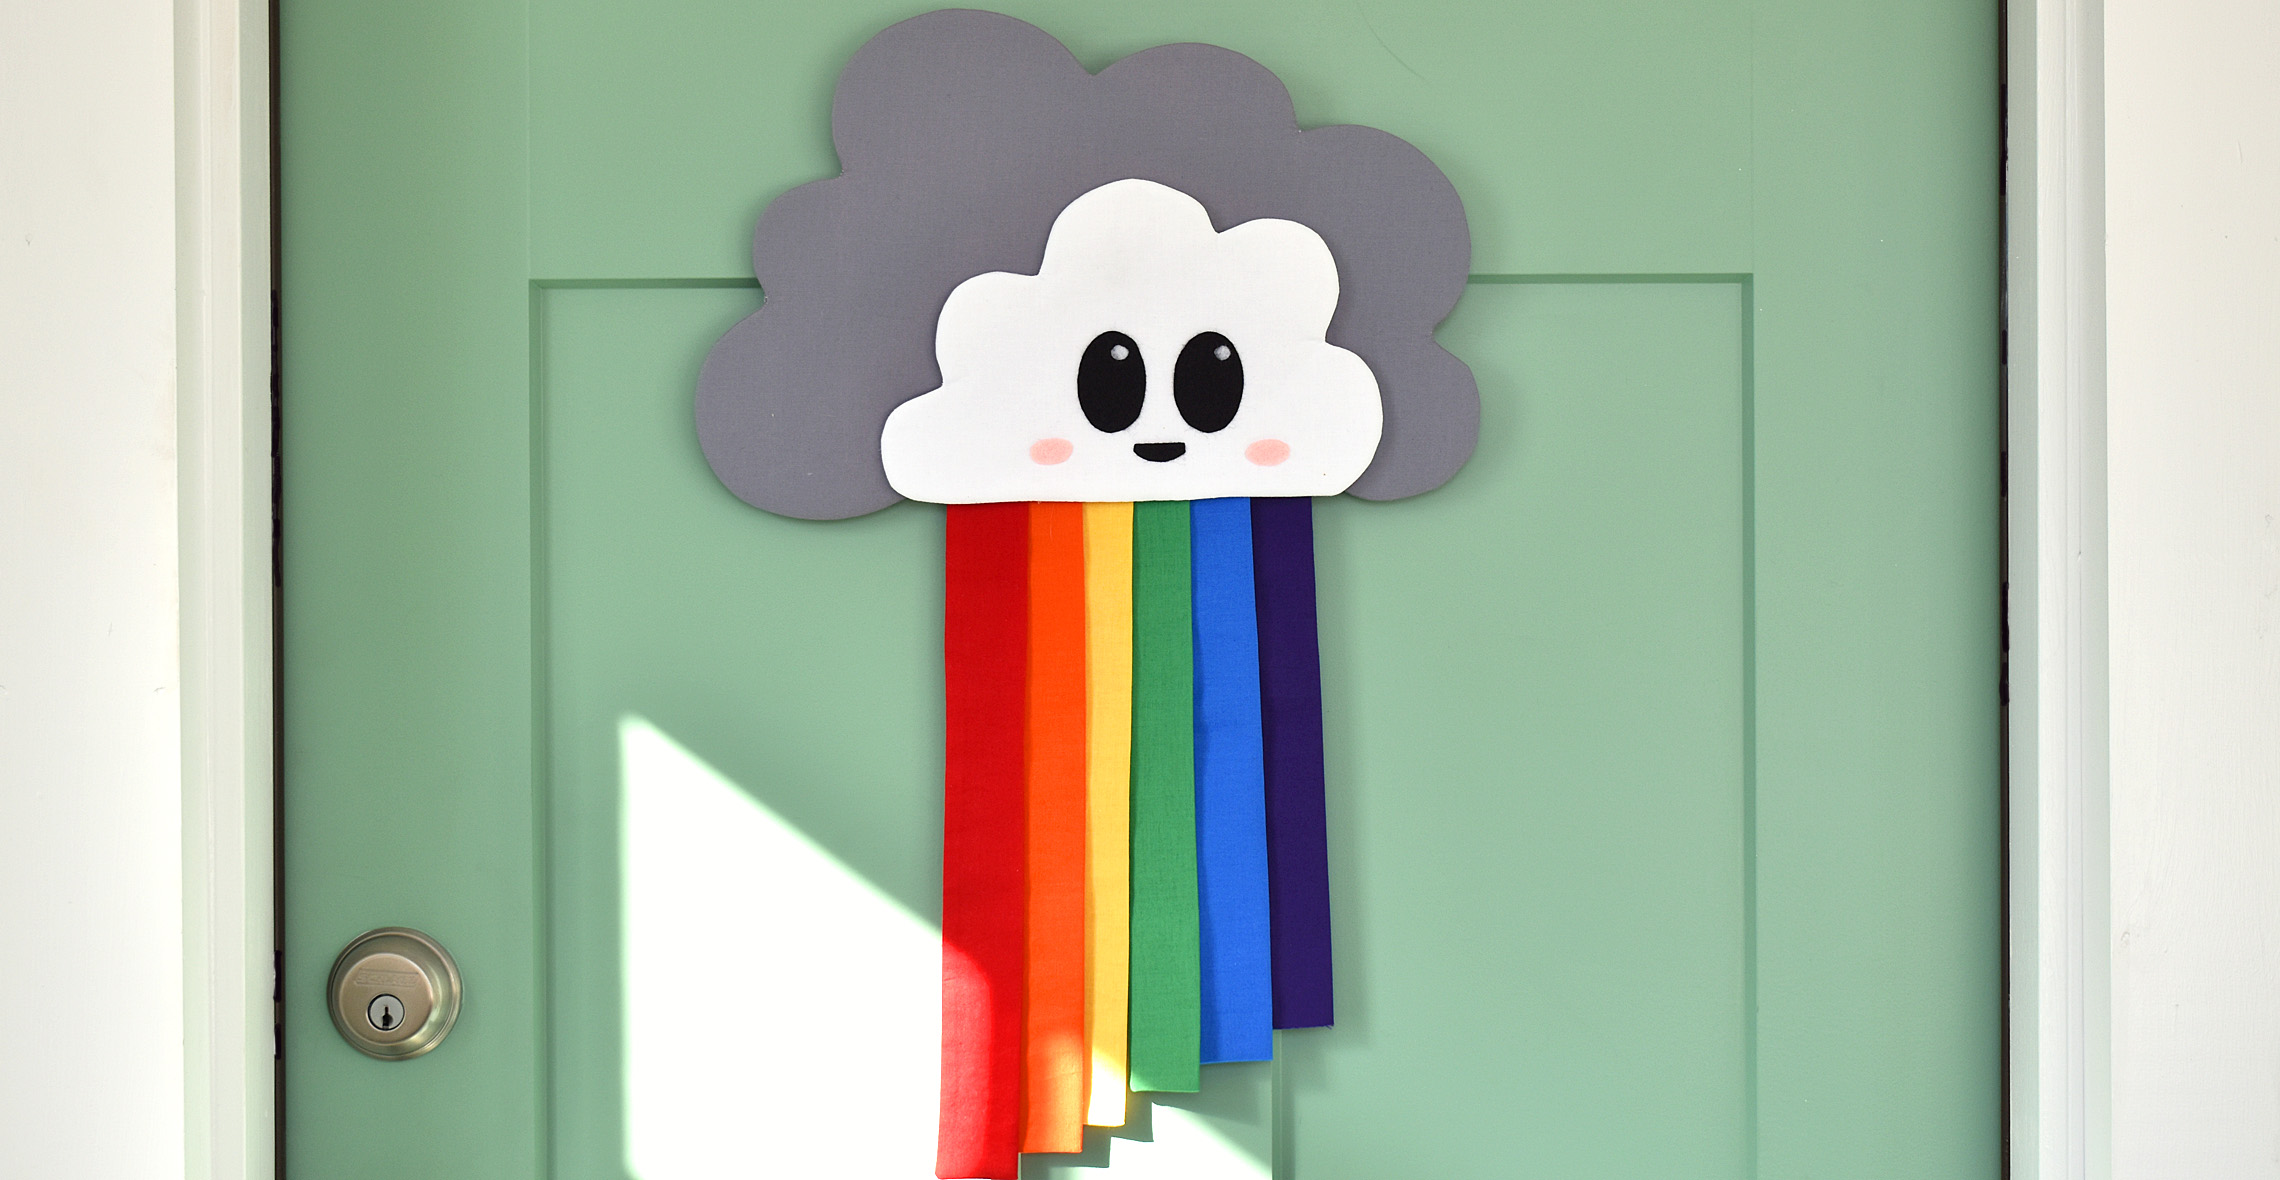 Rainbow Door Hanger by Erika Mulvenna for WeAllSew